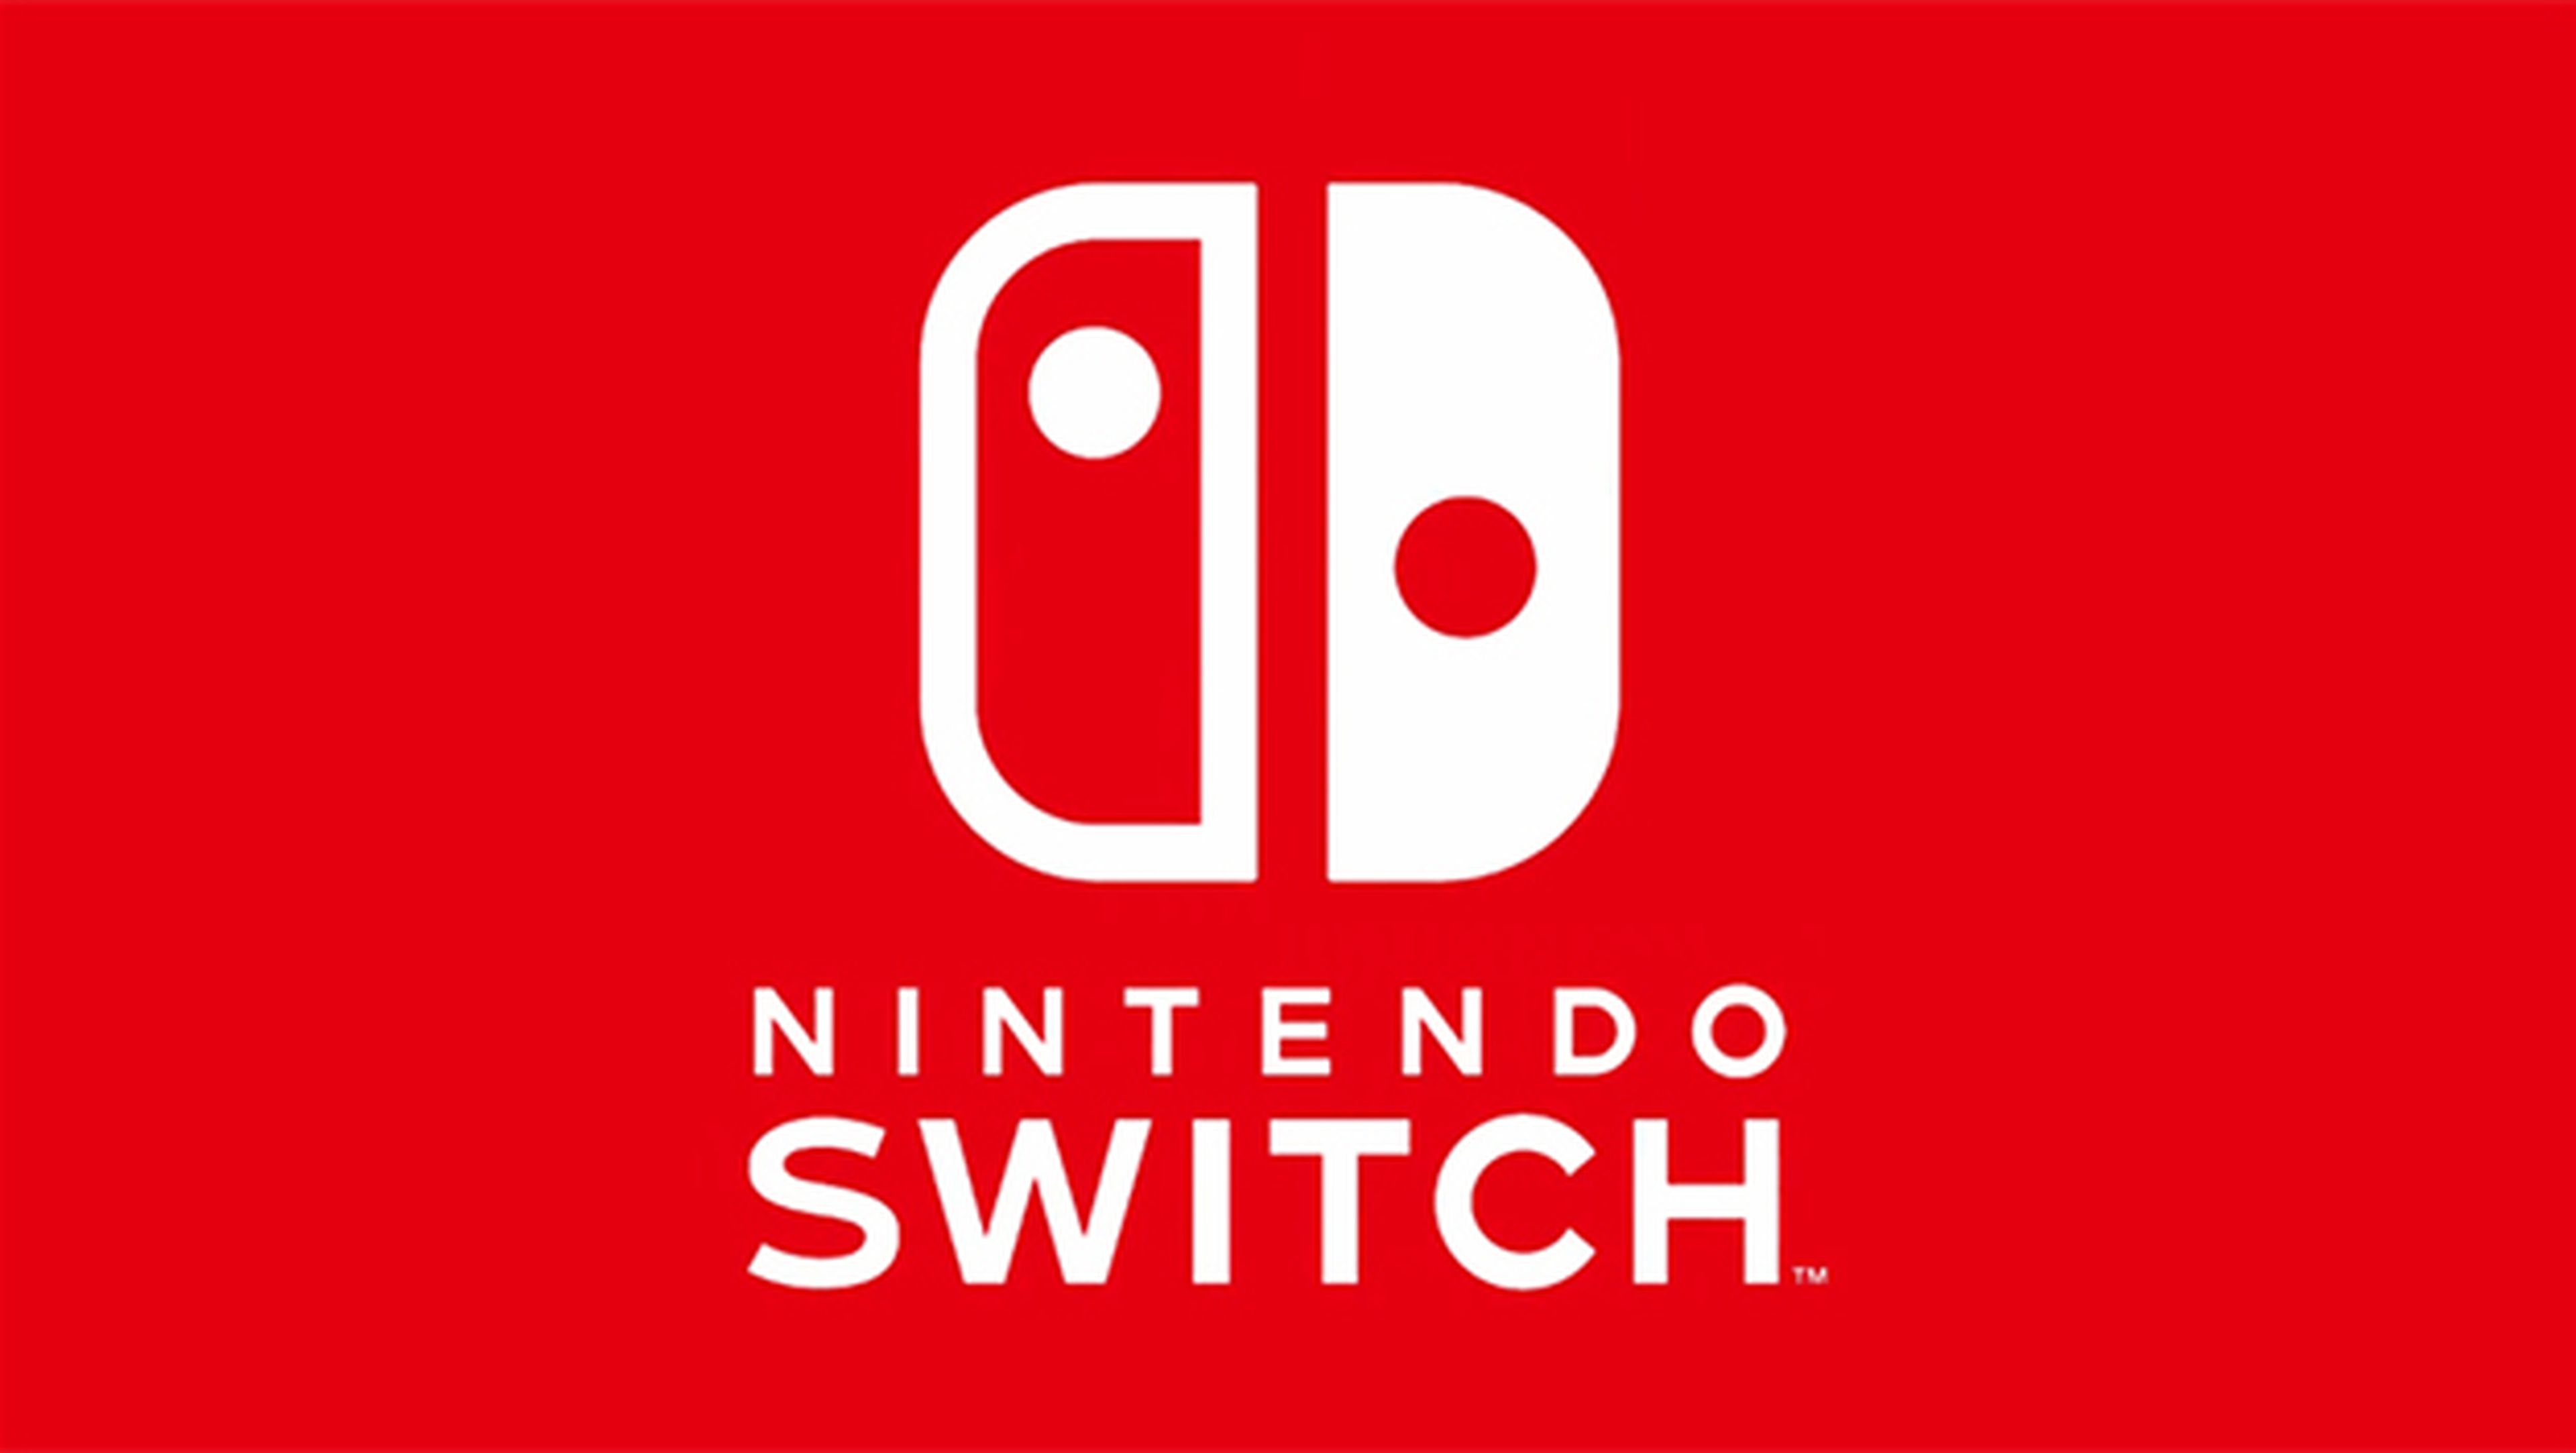 El logo de Nintendo Switch no es simétrico, y aquí lo demostramos |  Computer Hoy